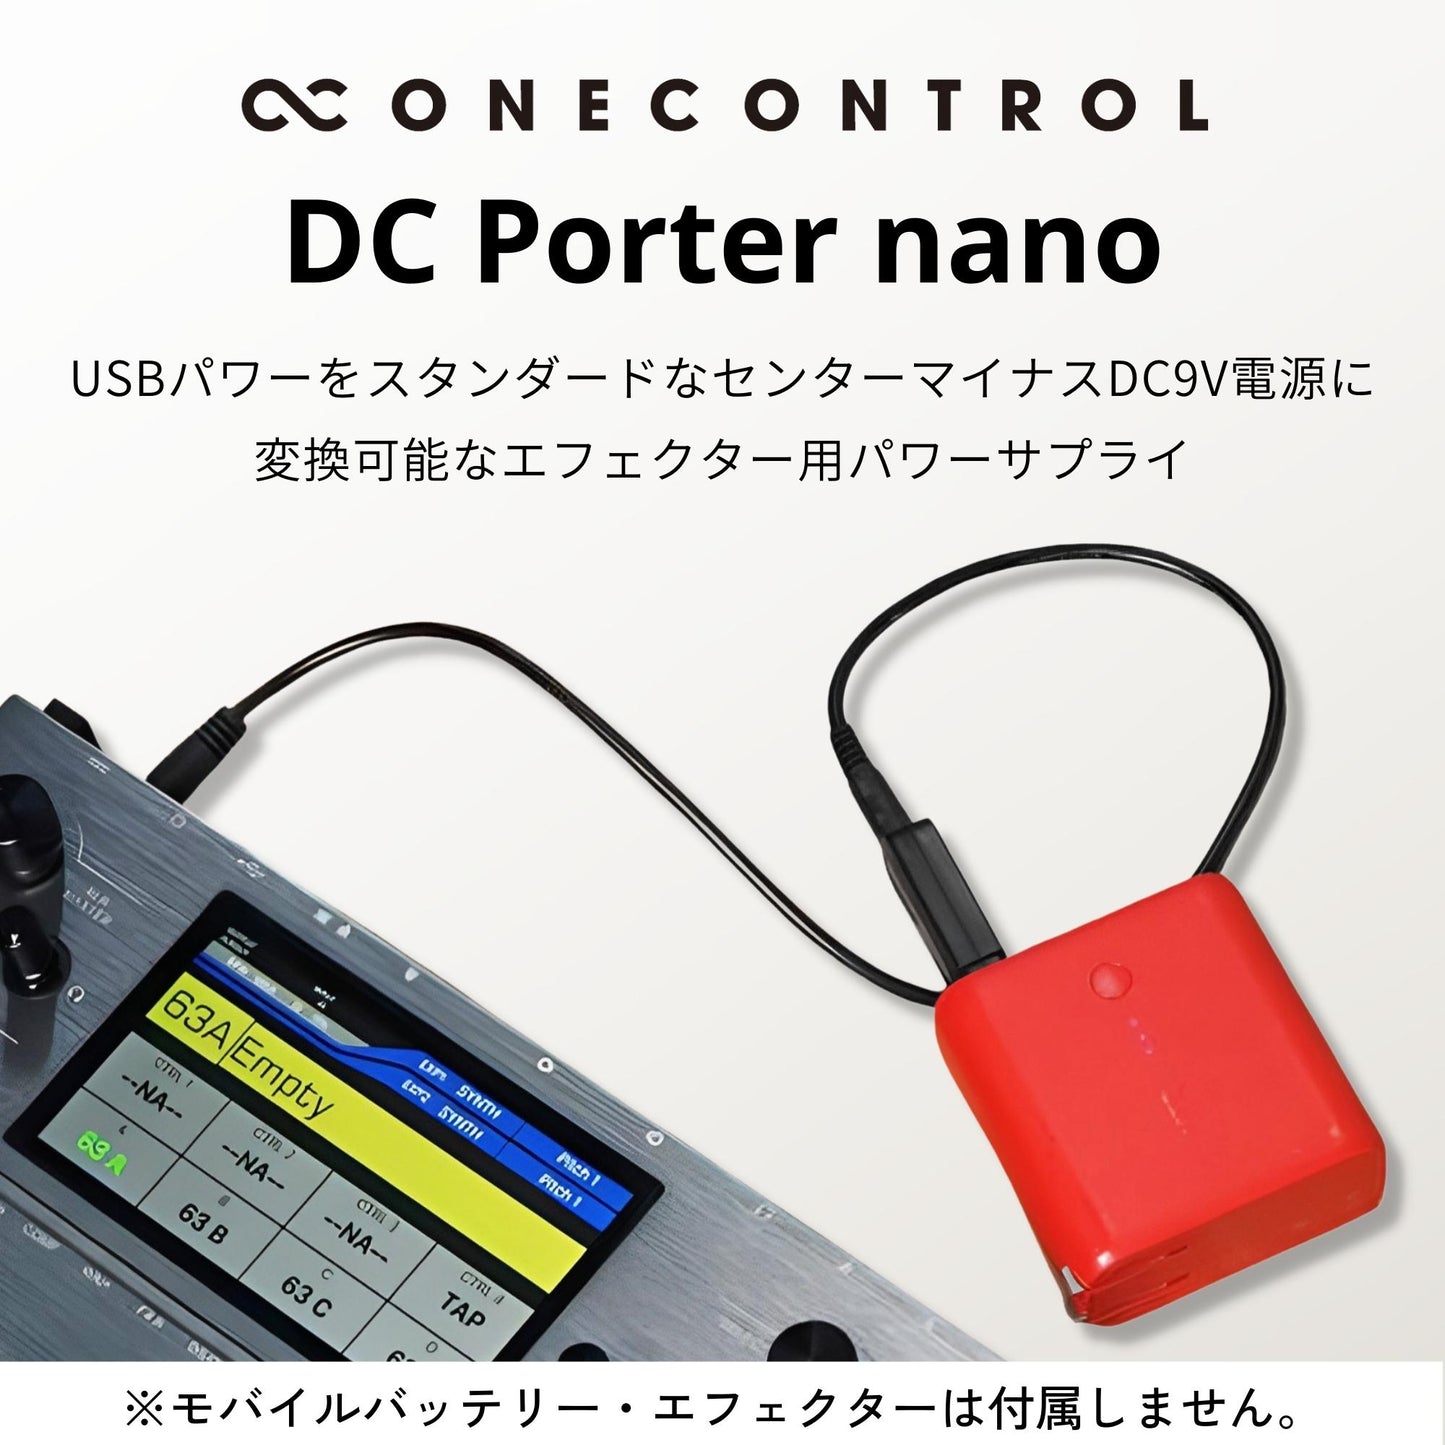 One Control/DC Porter nano